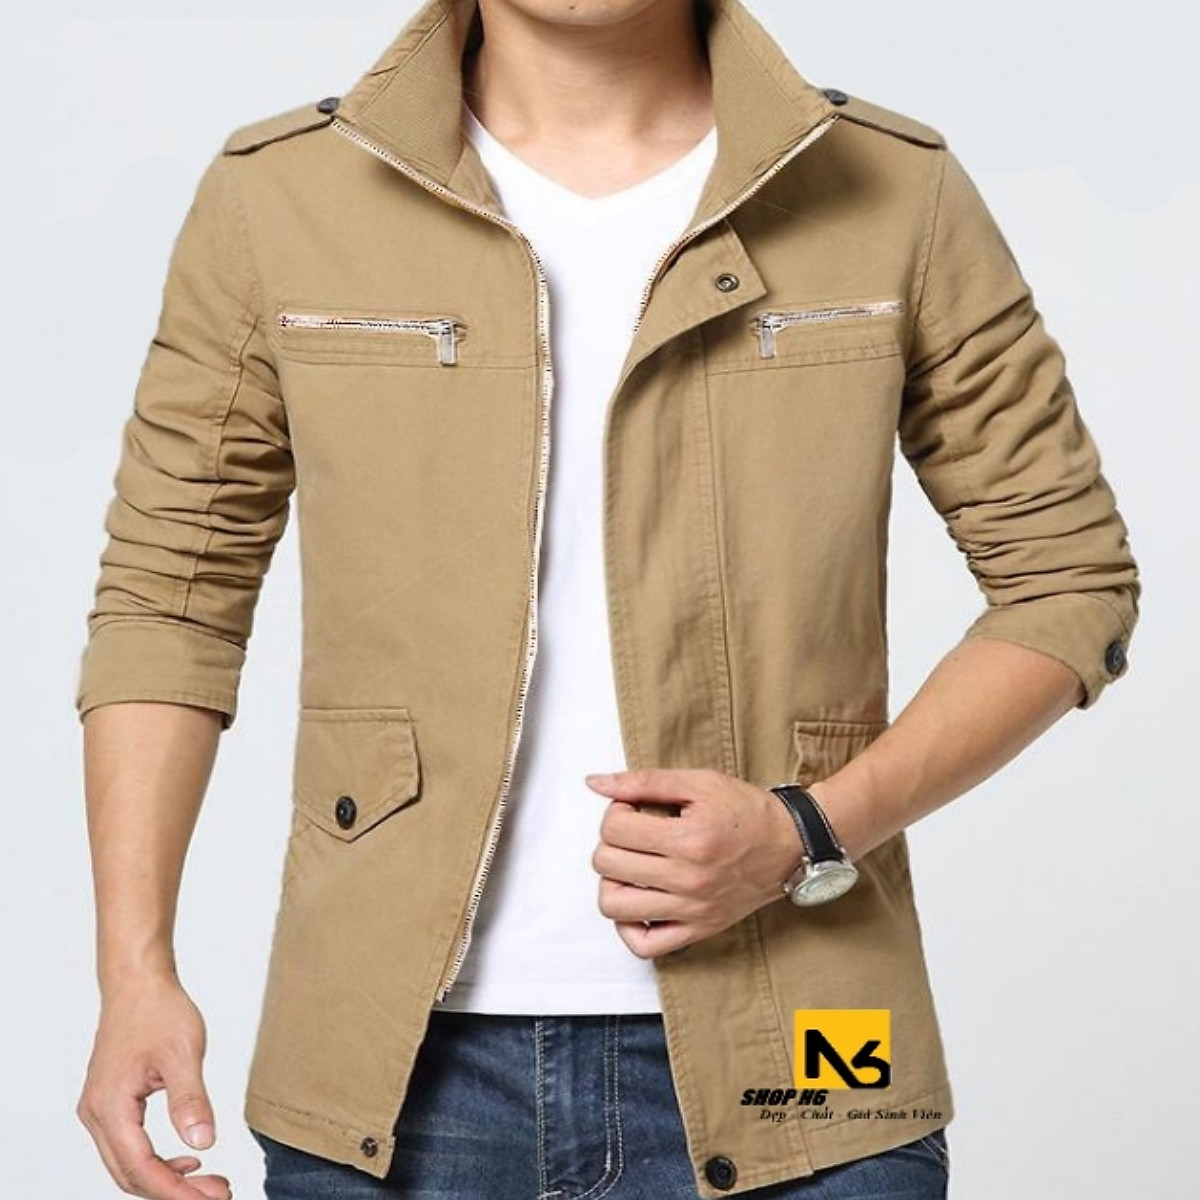 Áo khoác nam kaki giả vest phối túi AK65  Thời trang  bán tại Cùng Vào  Mua  áo khoác kaki nam hàn quốc áo khoác kaki hàn quốc áo khoác